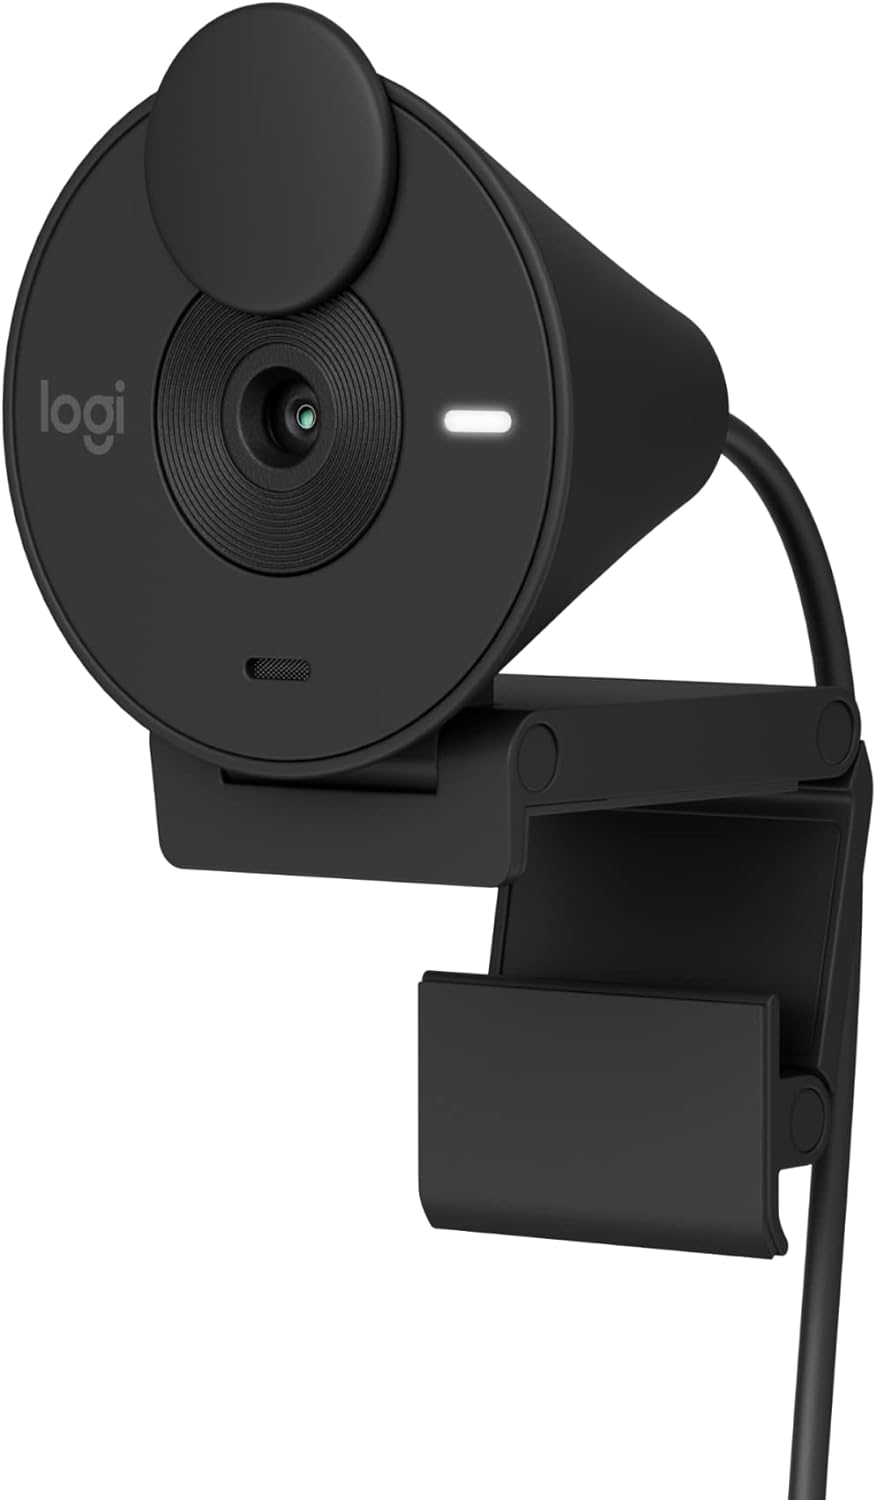 מצלמת רשת Logitech Brio 300 לוגיטק